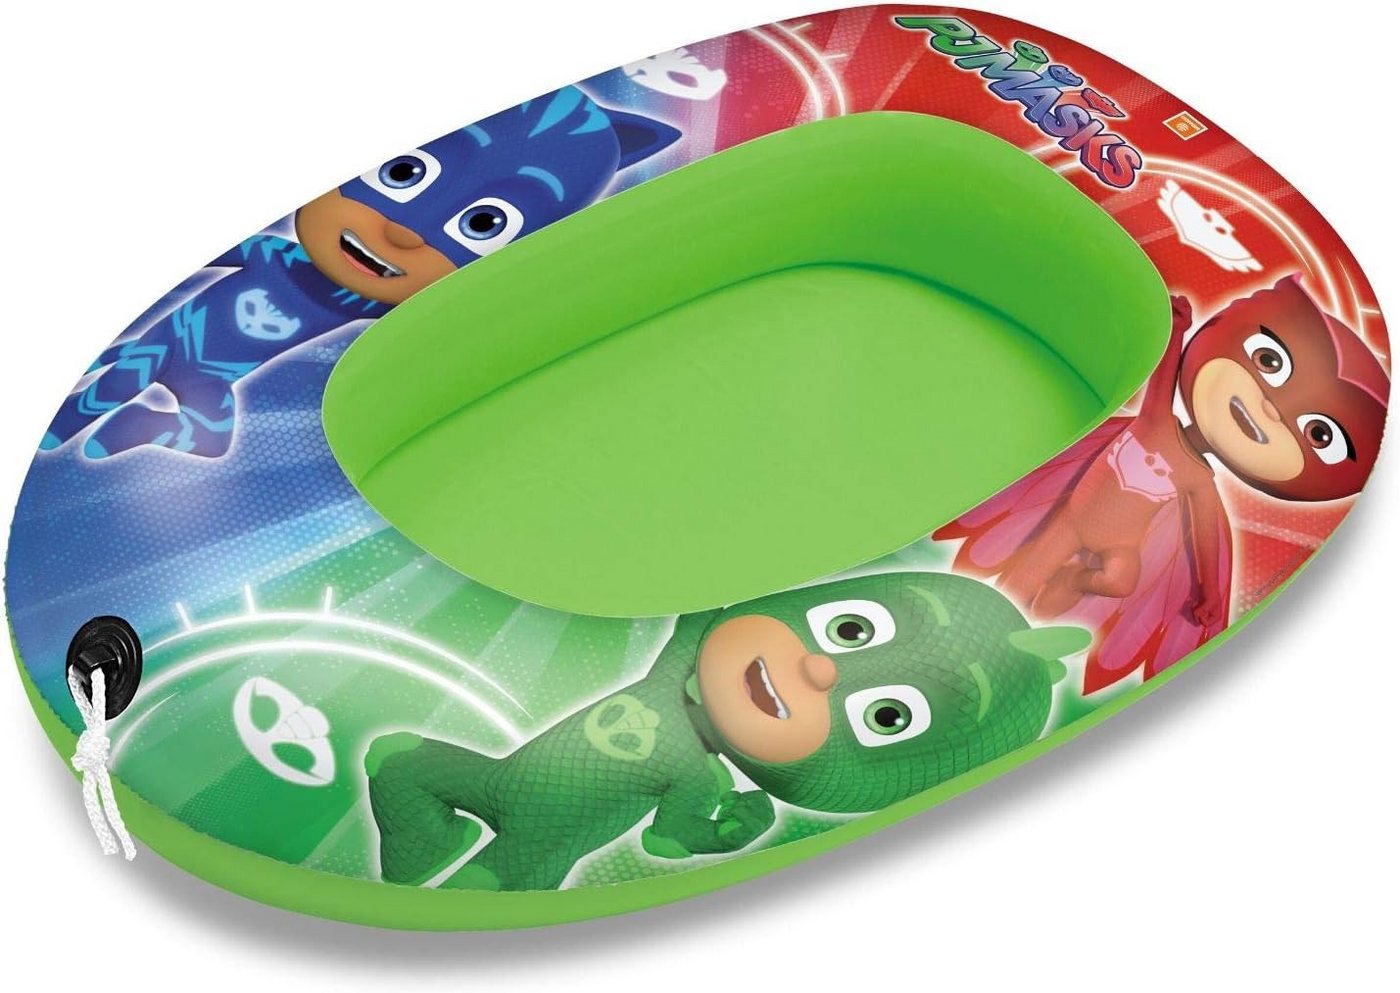 Preis-Shop24 Kinder-Schlauchboot Masks 94 cm Boot Pyjamahelden Design für Kinder Schlauchboot Gummiboot von Preis-Shop24